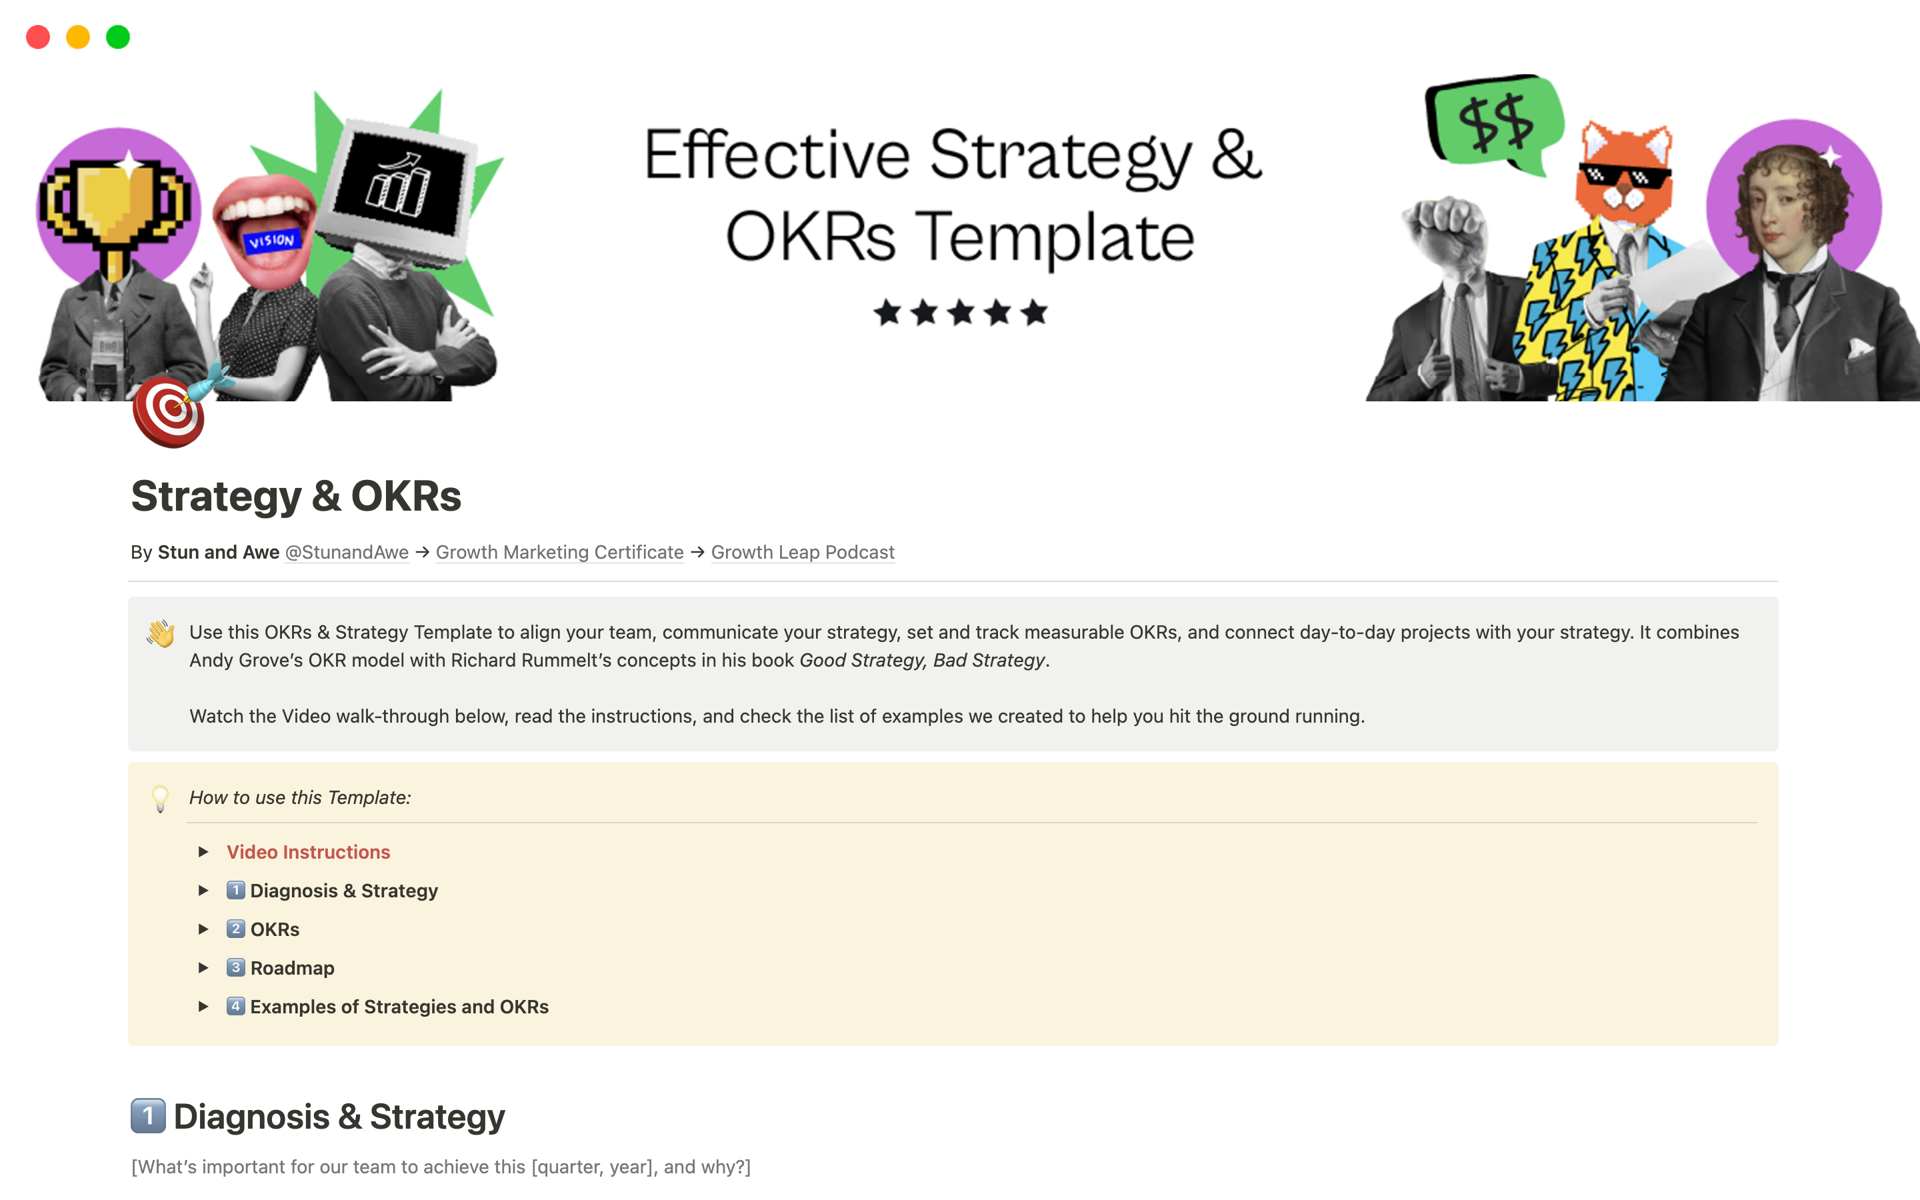 Uma prévia do modelo para Effective Strategy & OKRs